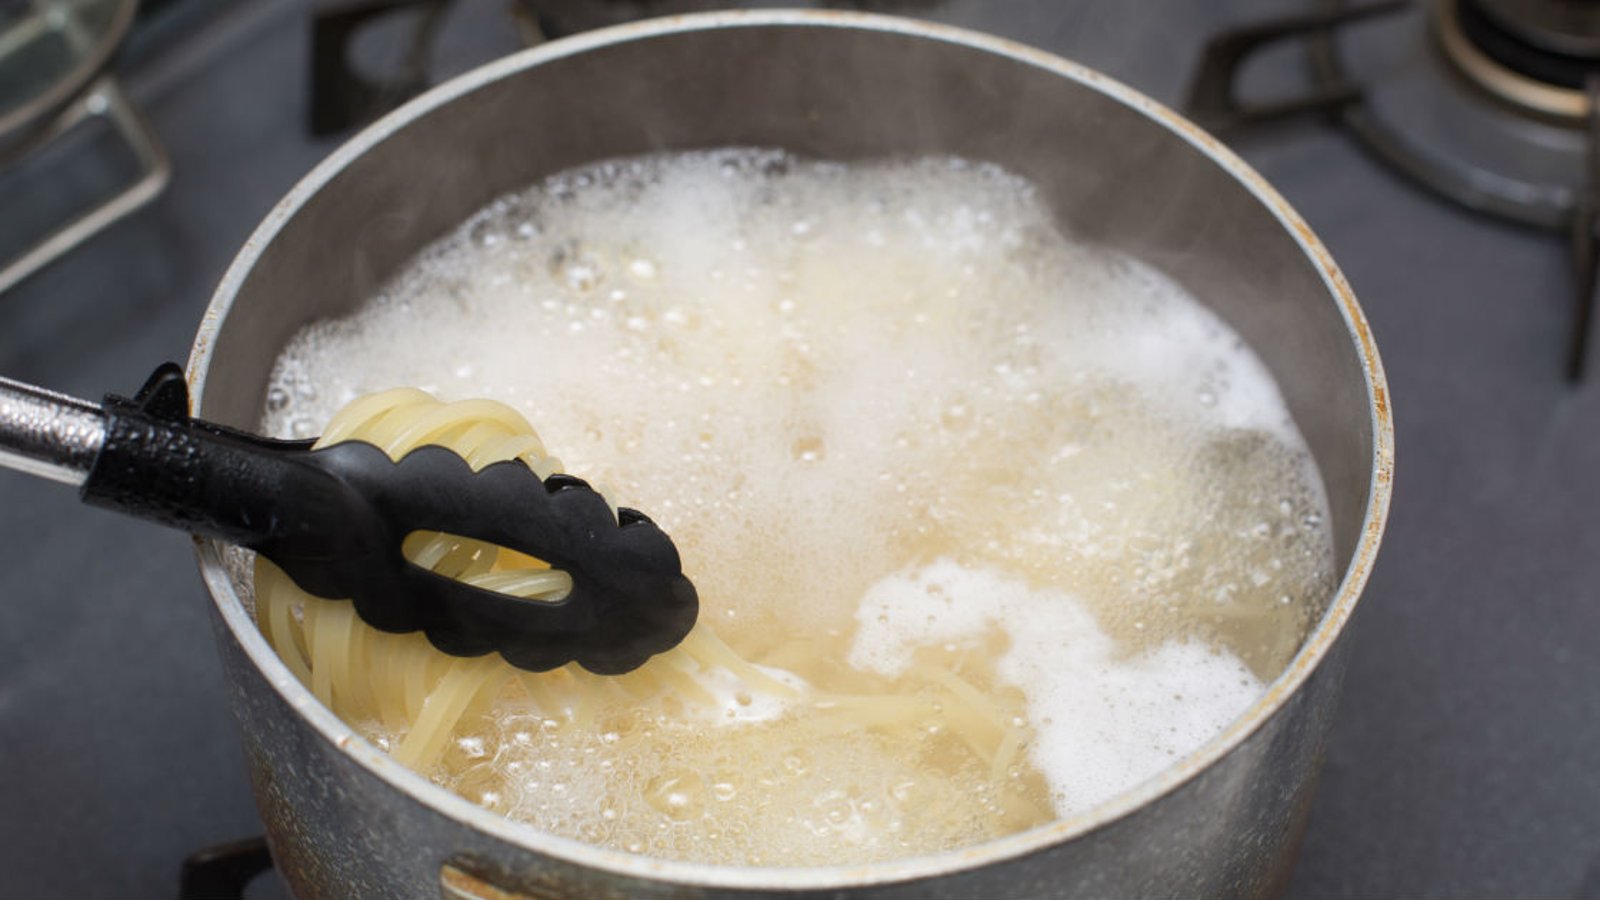 Faites cuire vos pâtes sans que l’eau déborde grâce à cette astuce vraiment simple!